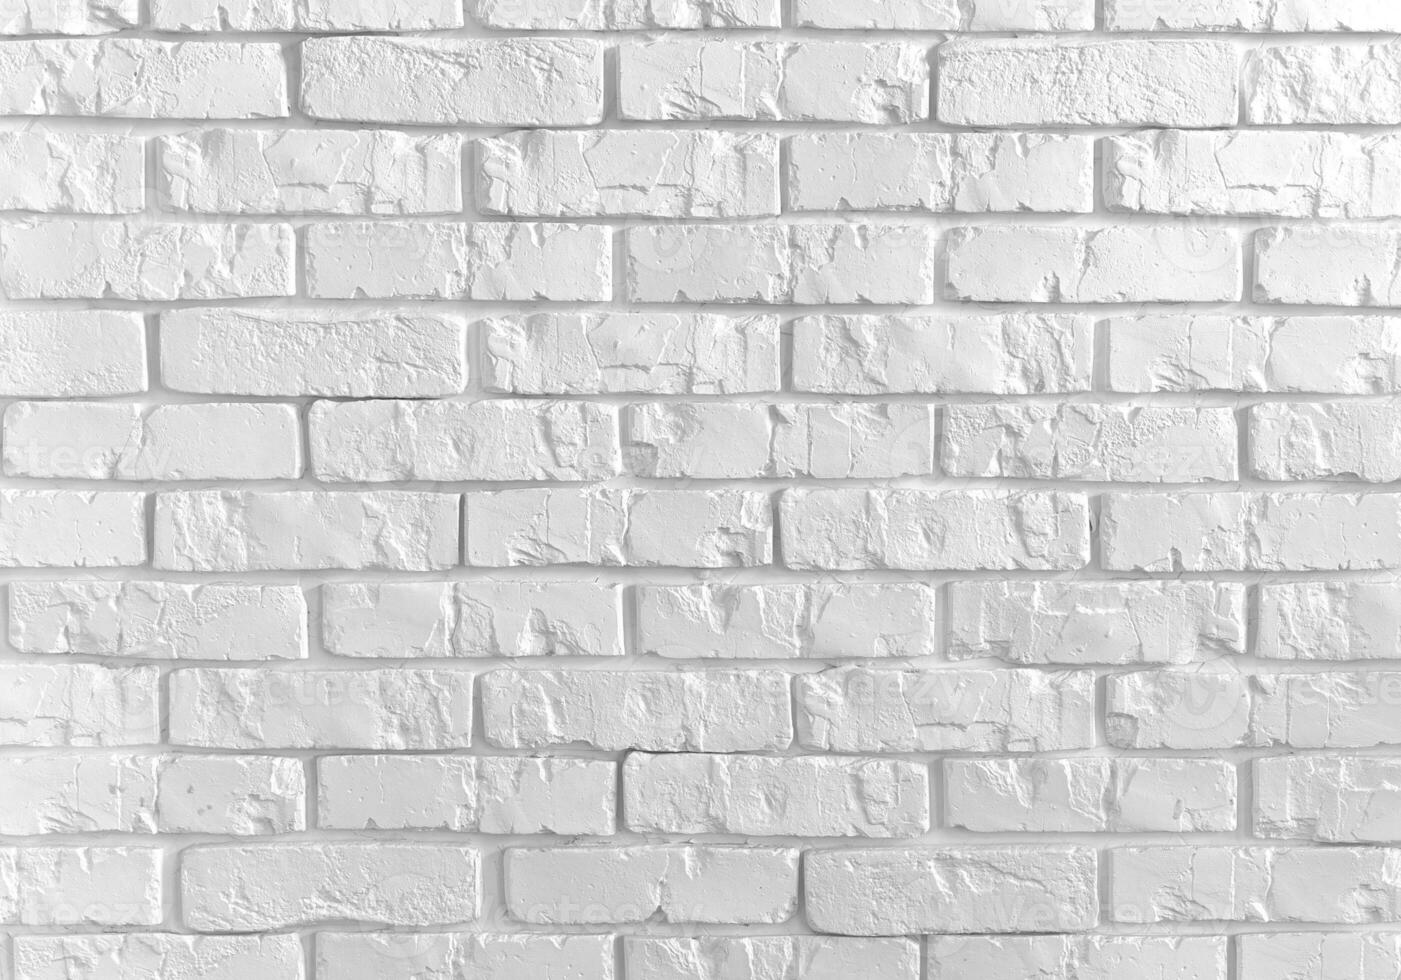 achtergrond van wit steen muur met pellen gips, steen textuur. beton zolder stijl ontwerp ideeën leven huis. plaats voor ontwerp foto